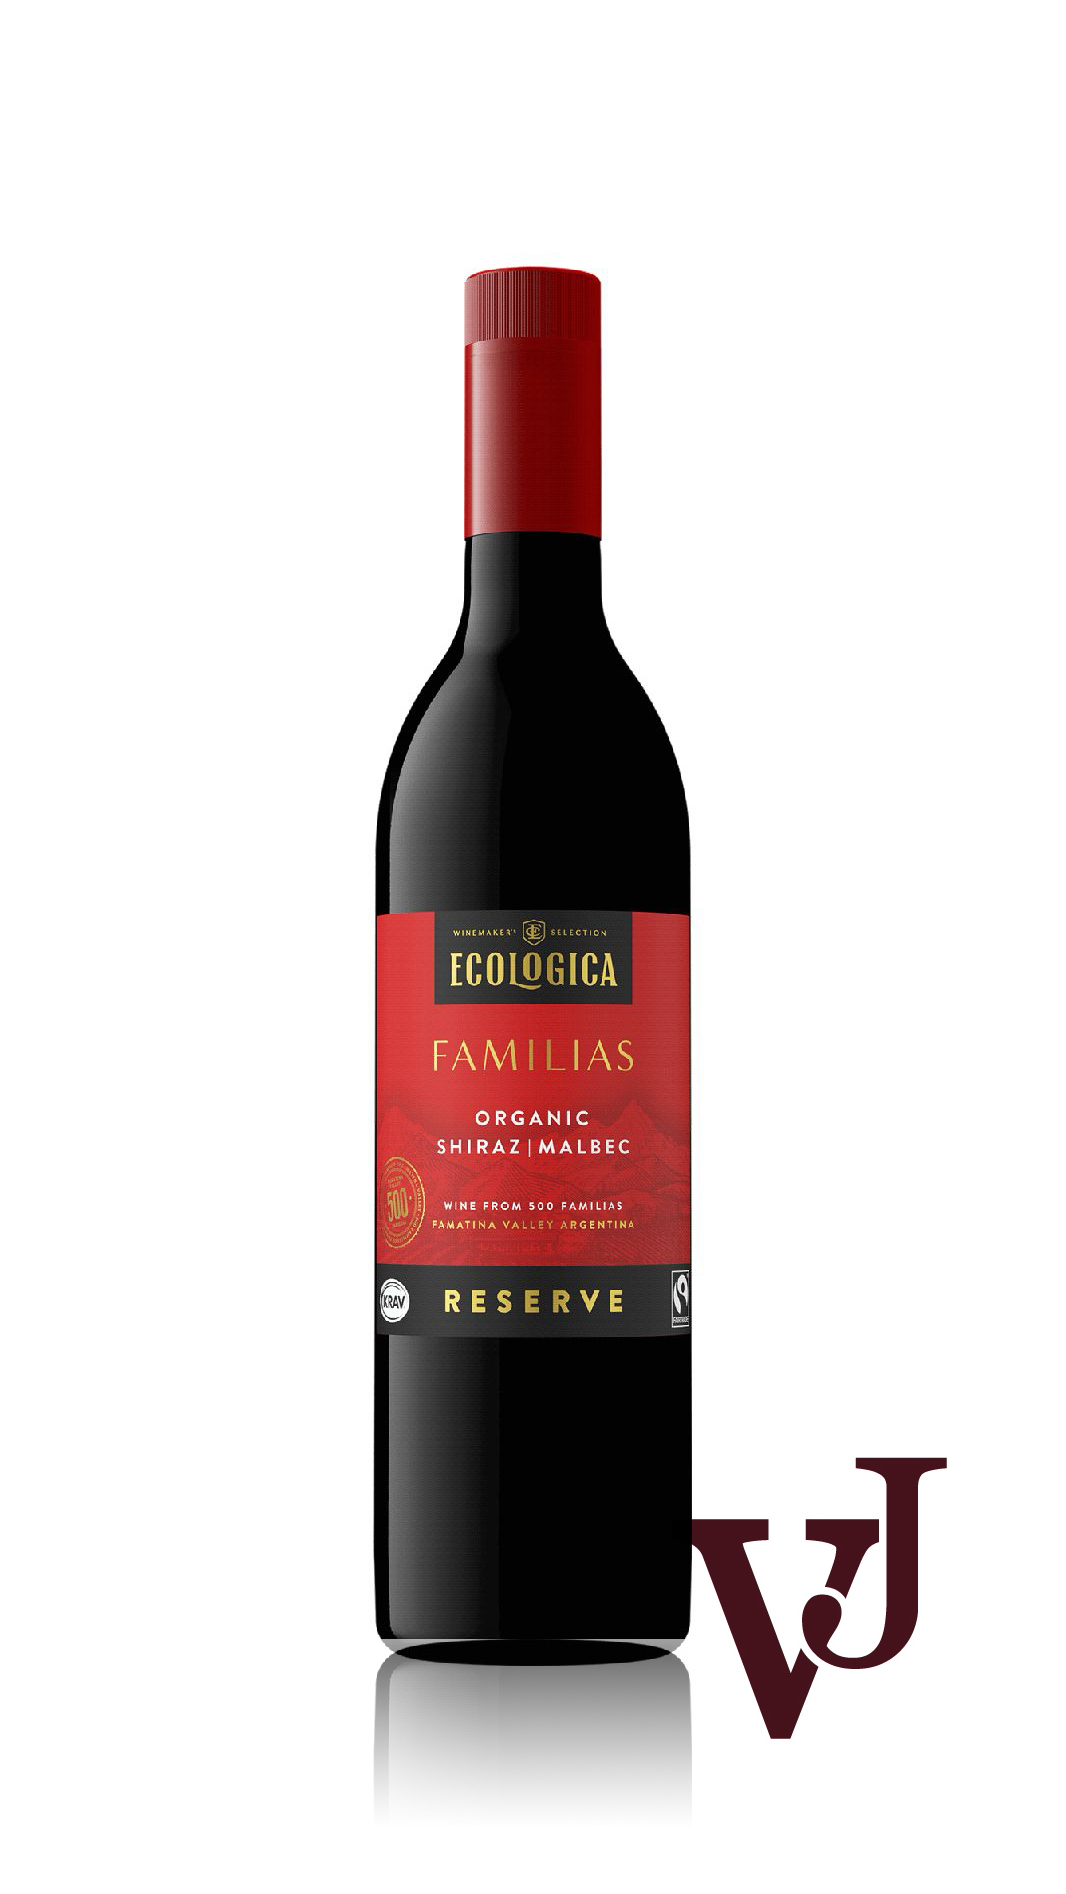 Rött Vin - Ecologica Familias Reserve artikel nummer 246301 från producenten La Riojana Coop från området Argentina